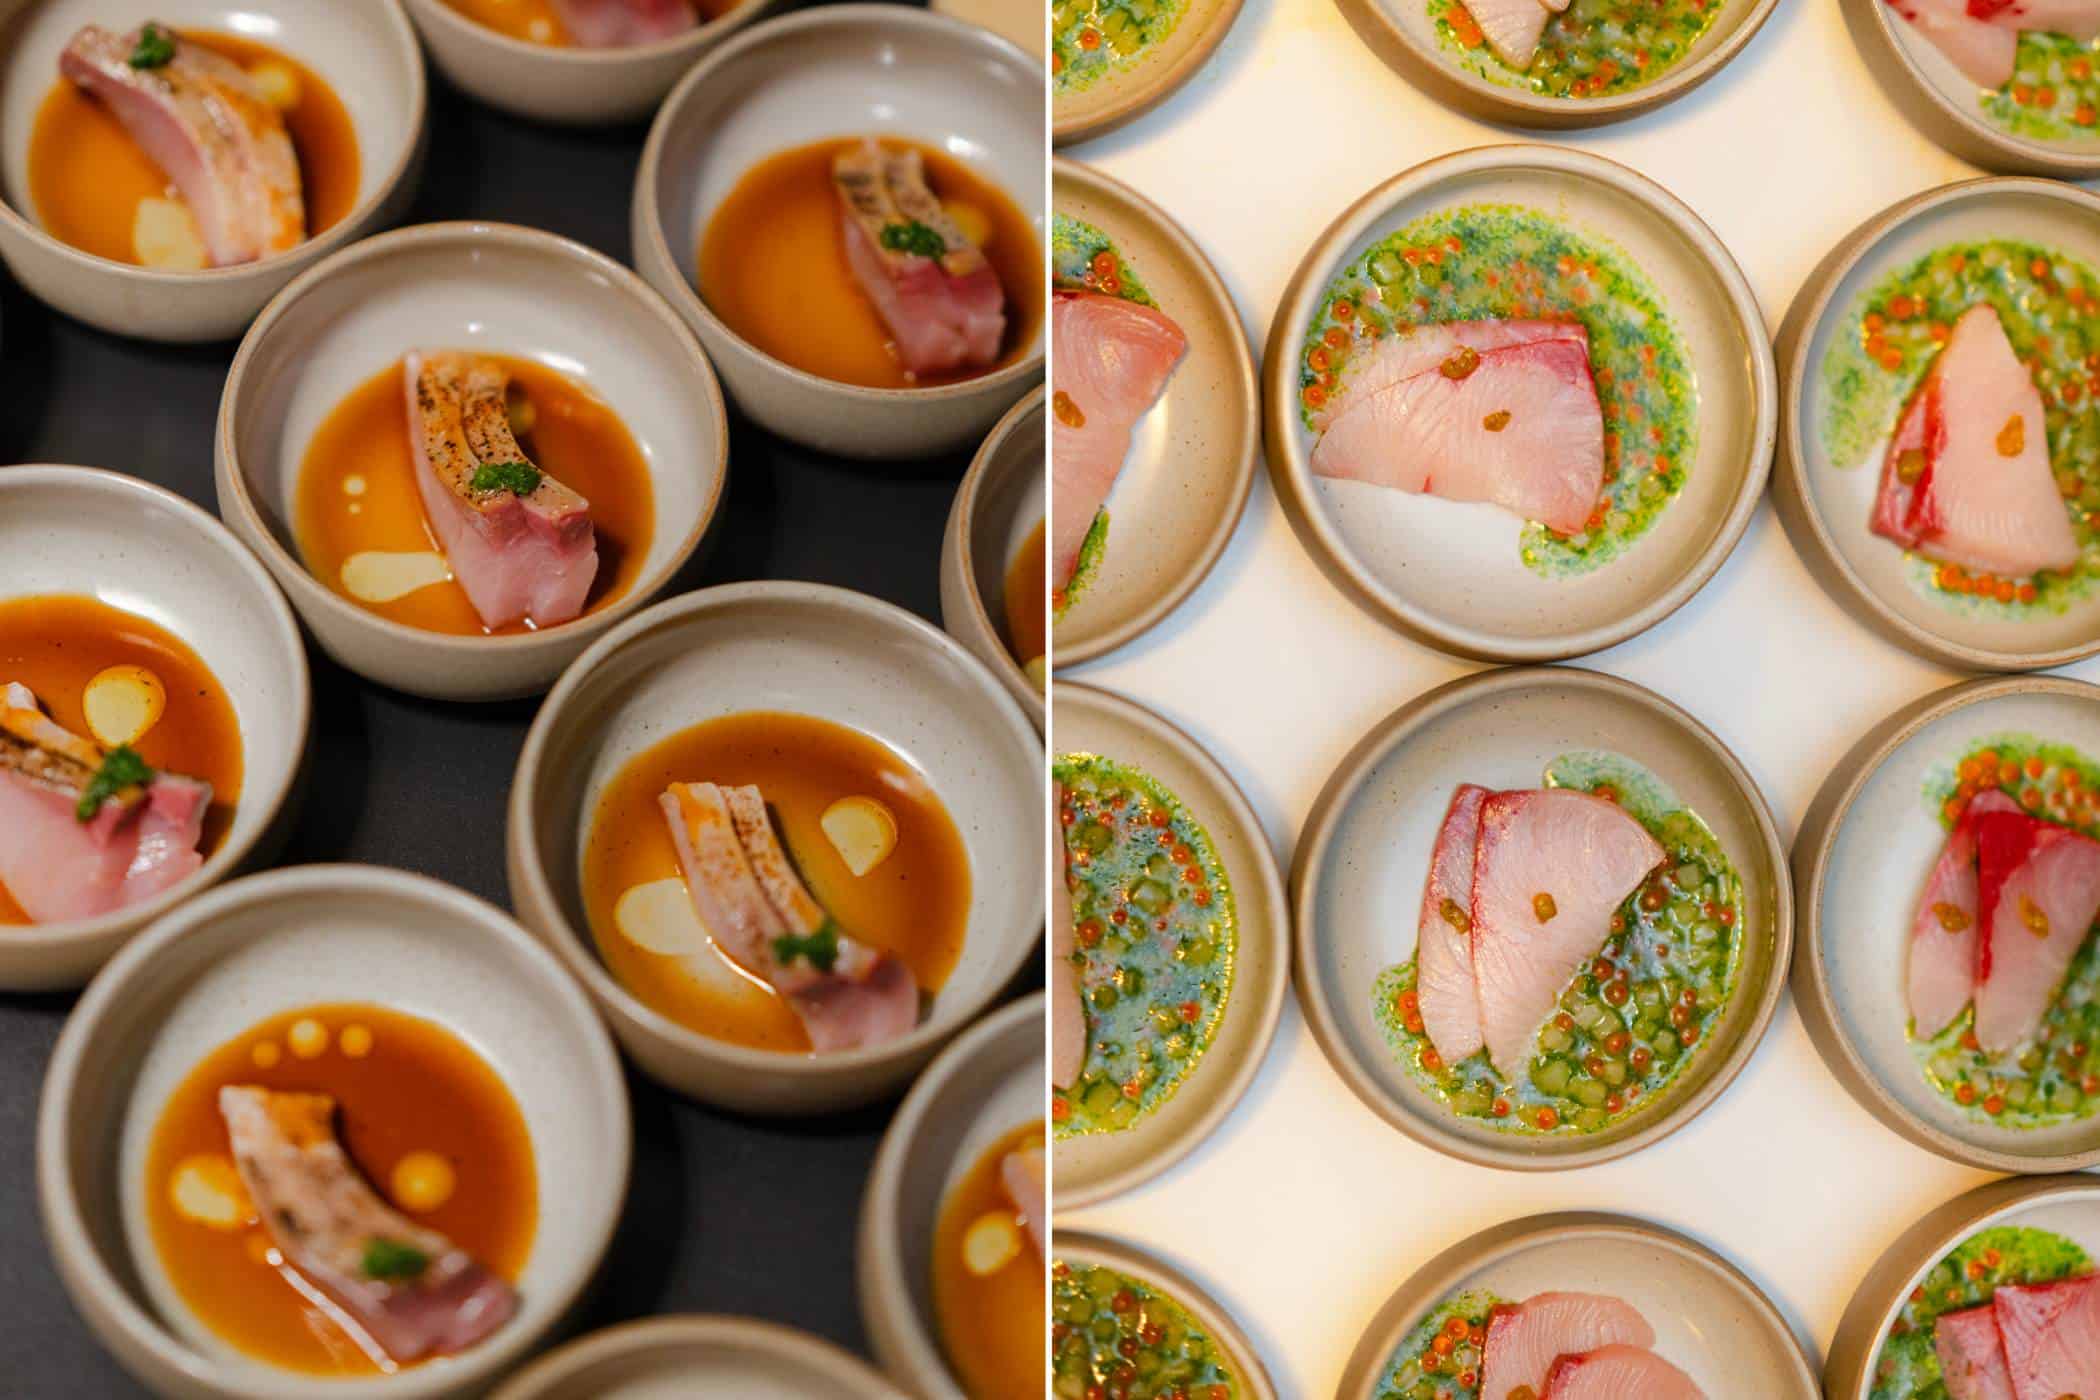 fisch aus japan 2 - gastronomie, food-nomyblog Buri und Madai: Zwei exklusive japanische Speisefische stellen sich vor